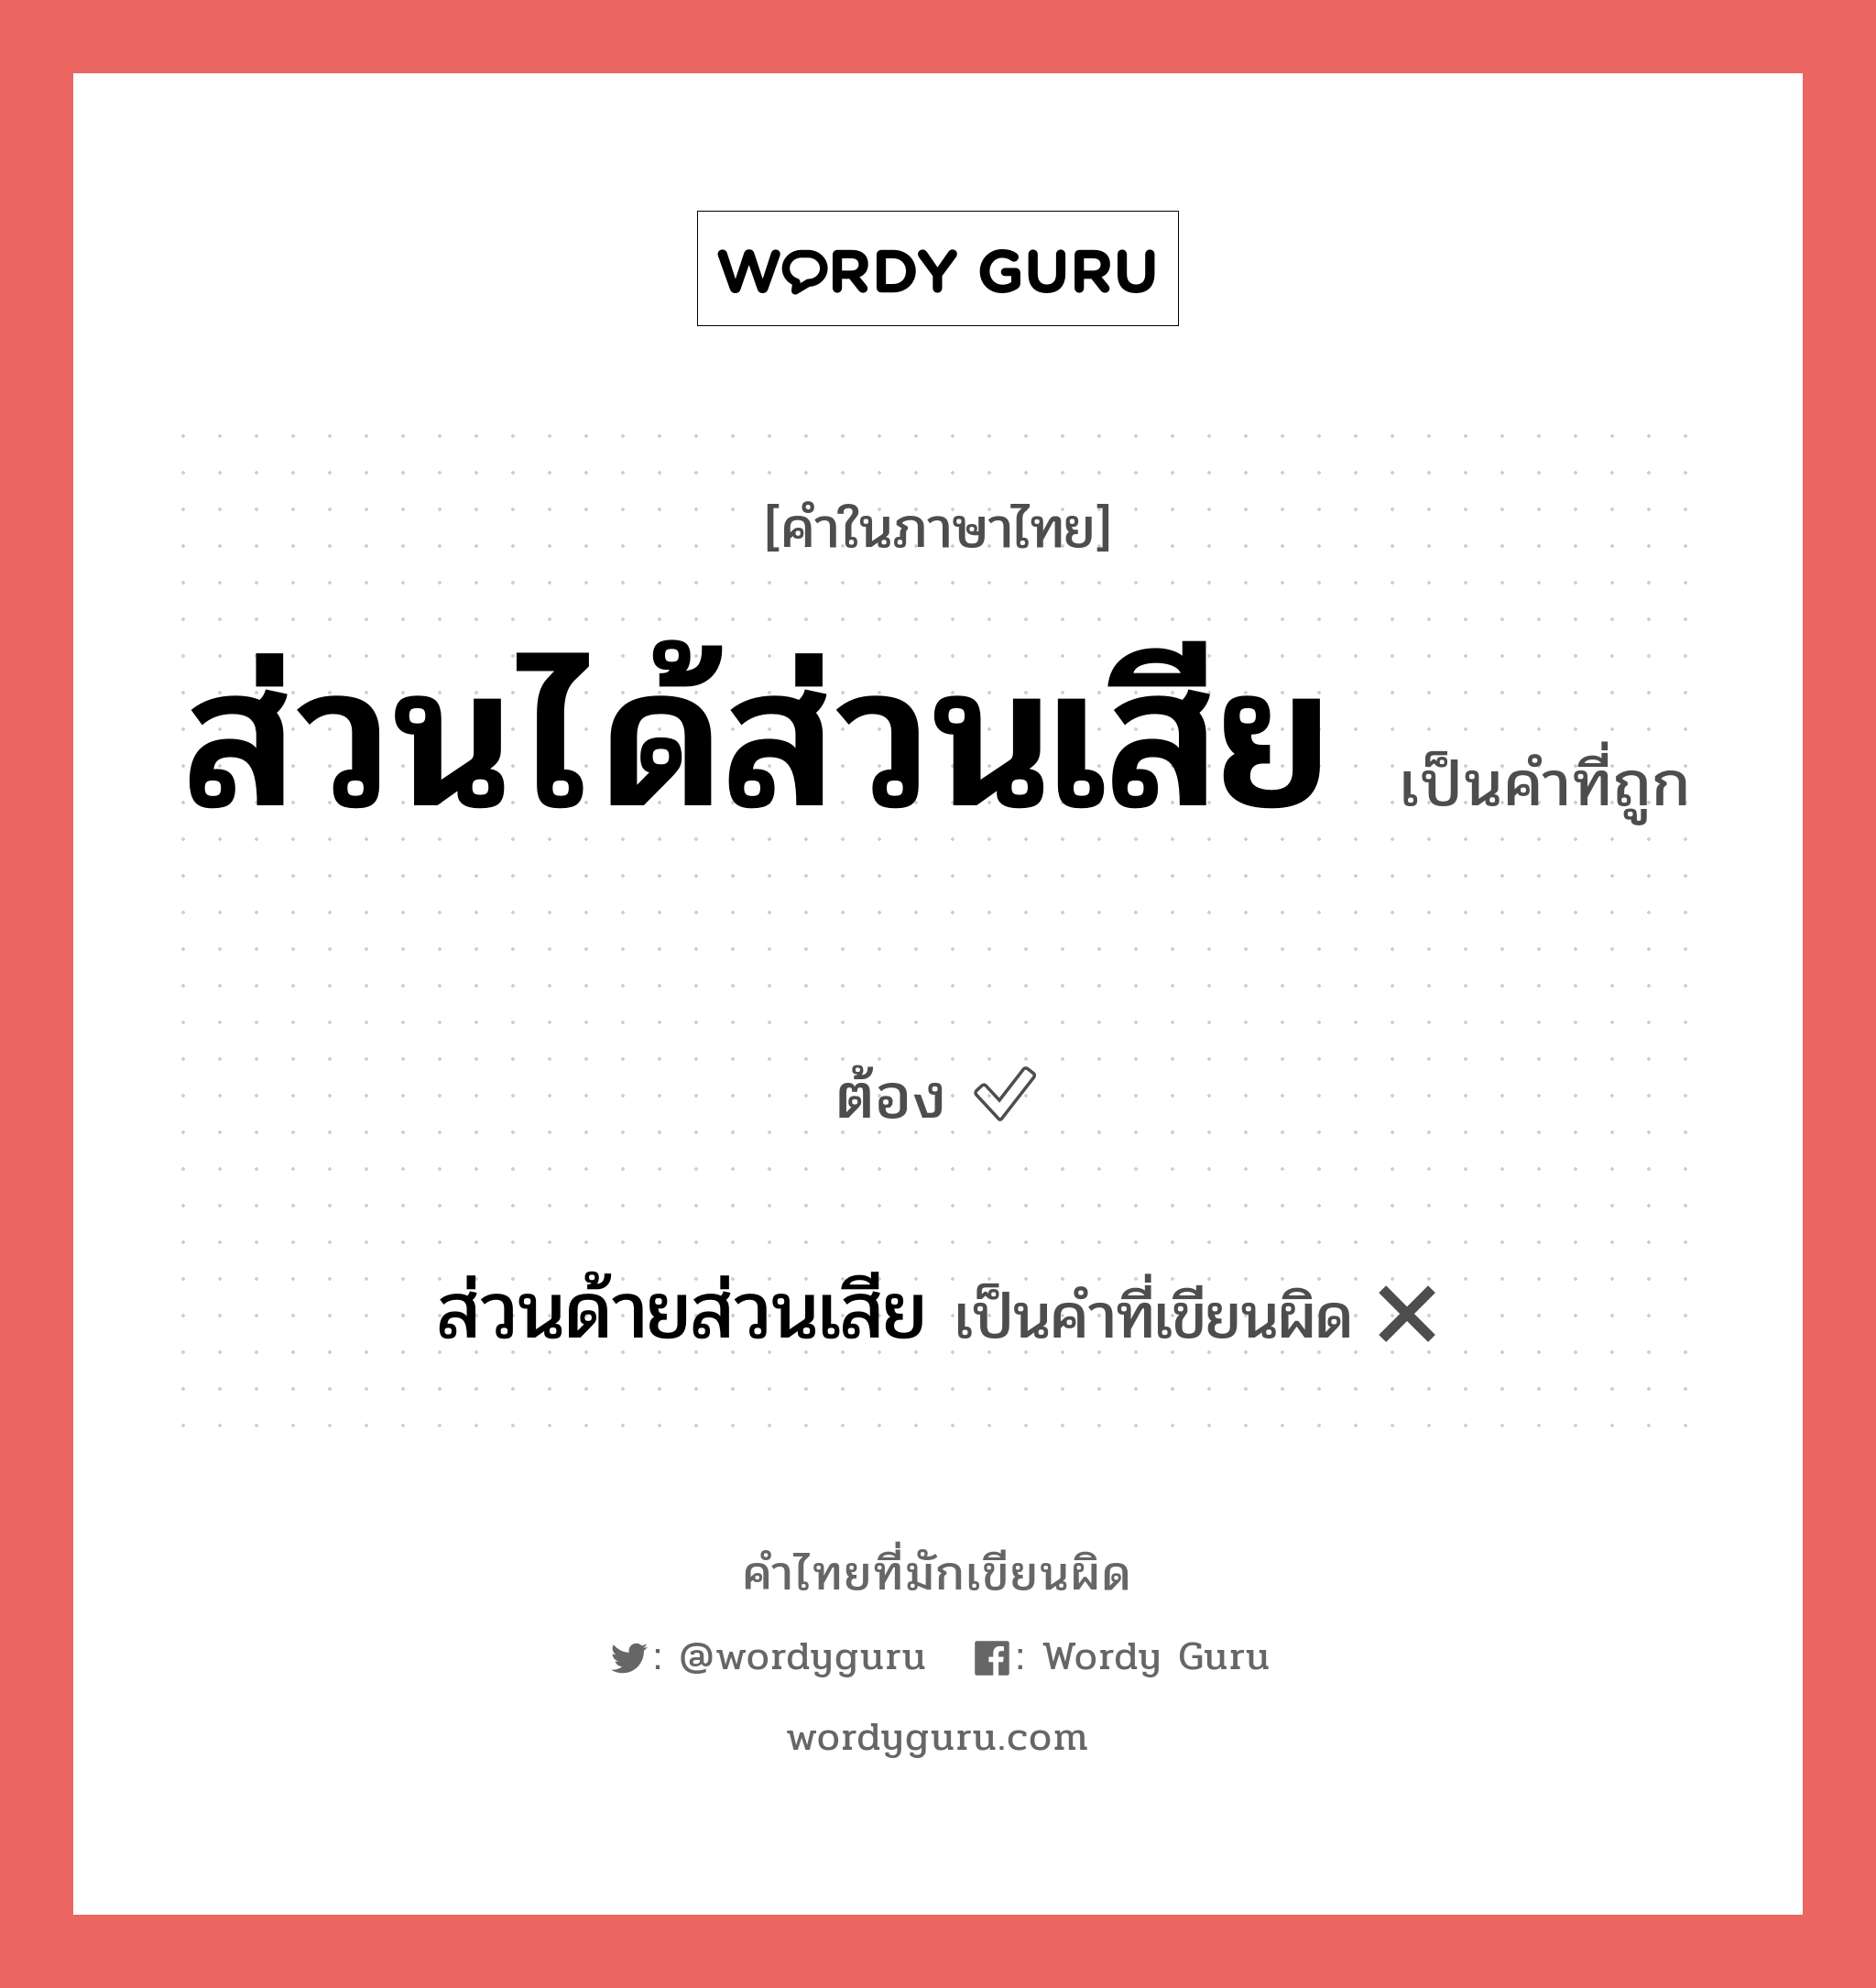 ส่วนได้ส่วนเสีย หรือ ส่วนด้ายส่วนเสีย คำไหนเขียนถูก?, คำในภาษาไทยที่มักเขียนผิด ส่วนได้ส่วนเสีย คำที่ผิด ❌ ส่วนด้ายส่วนเสีย